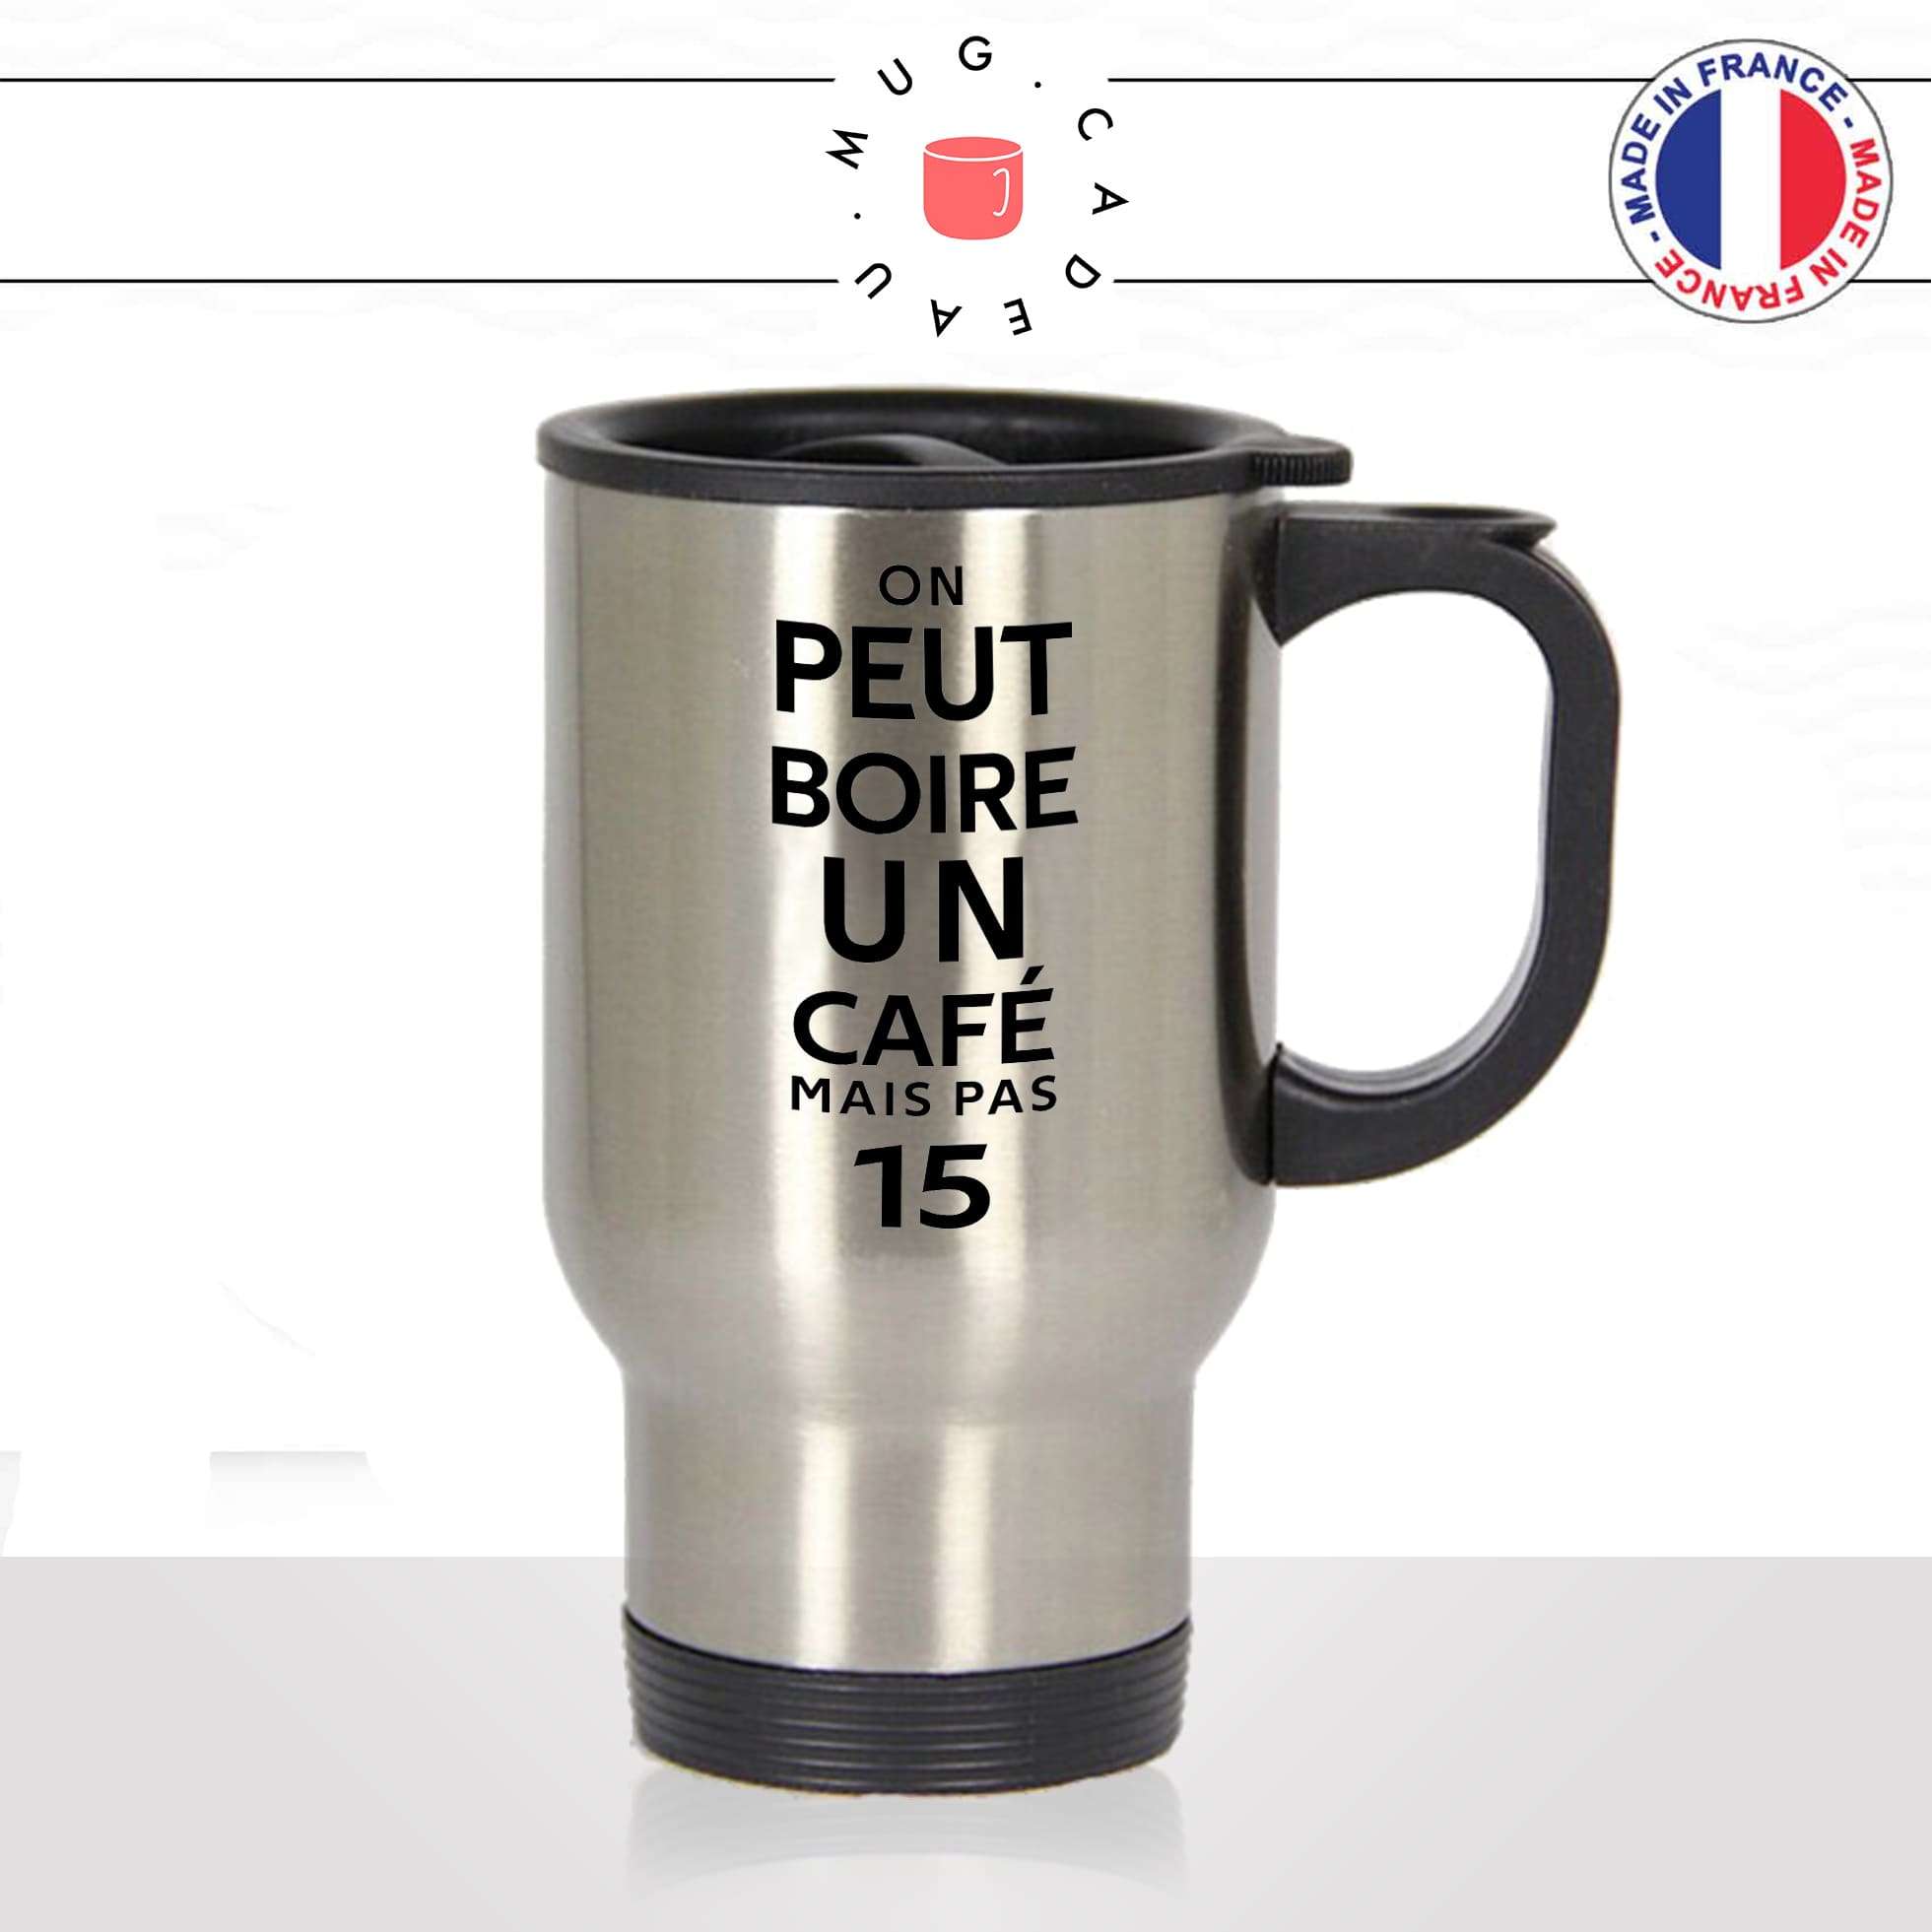 mug-tasse-thermos-isotherme-voyage-on-peut-boire-un-café-mais-pas-15-citation-film-les-tuches-parodie-humour-fun-idée-cadeau-original2